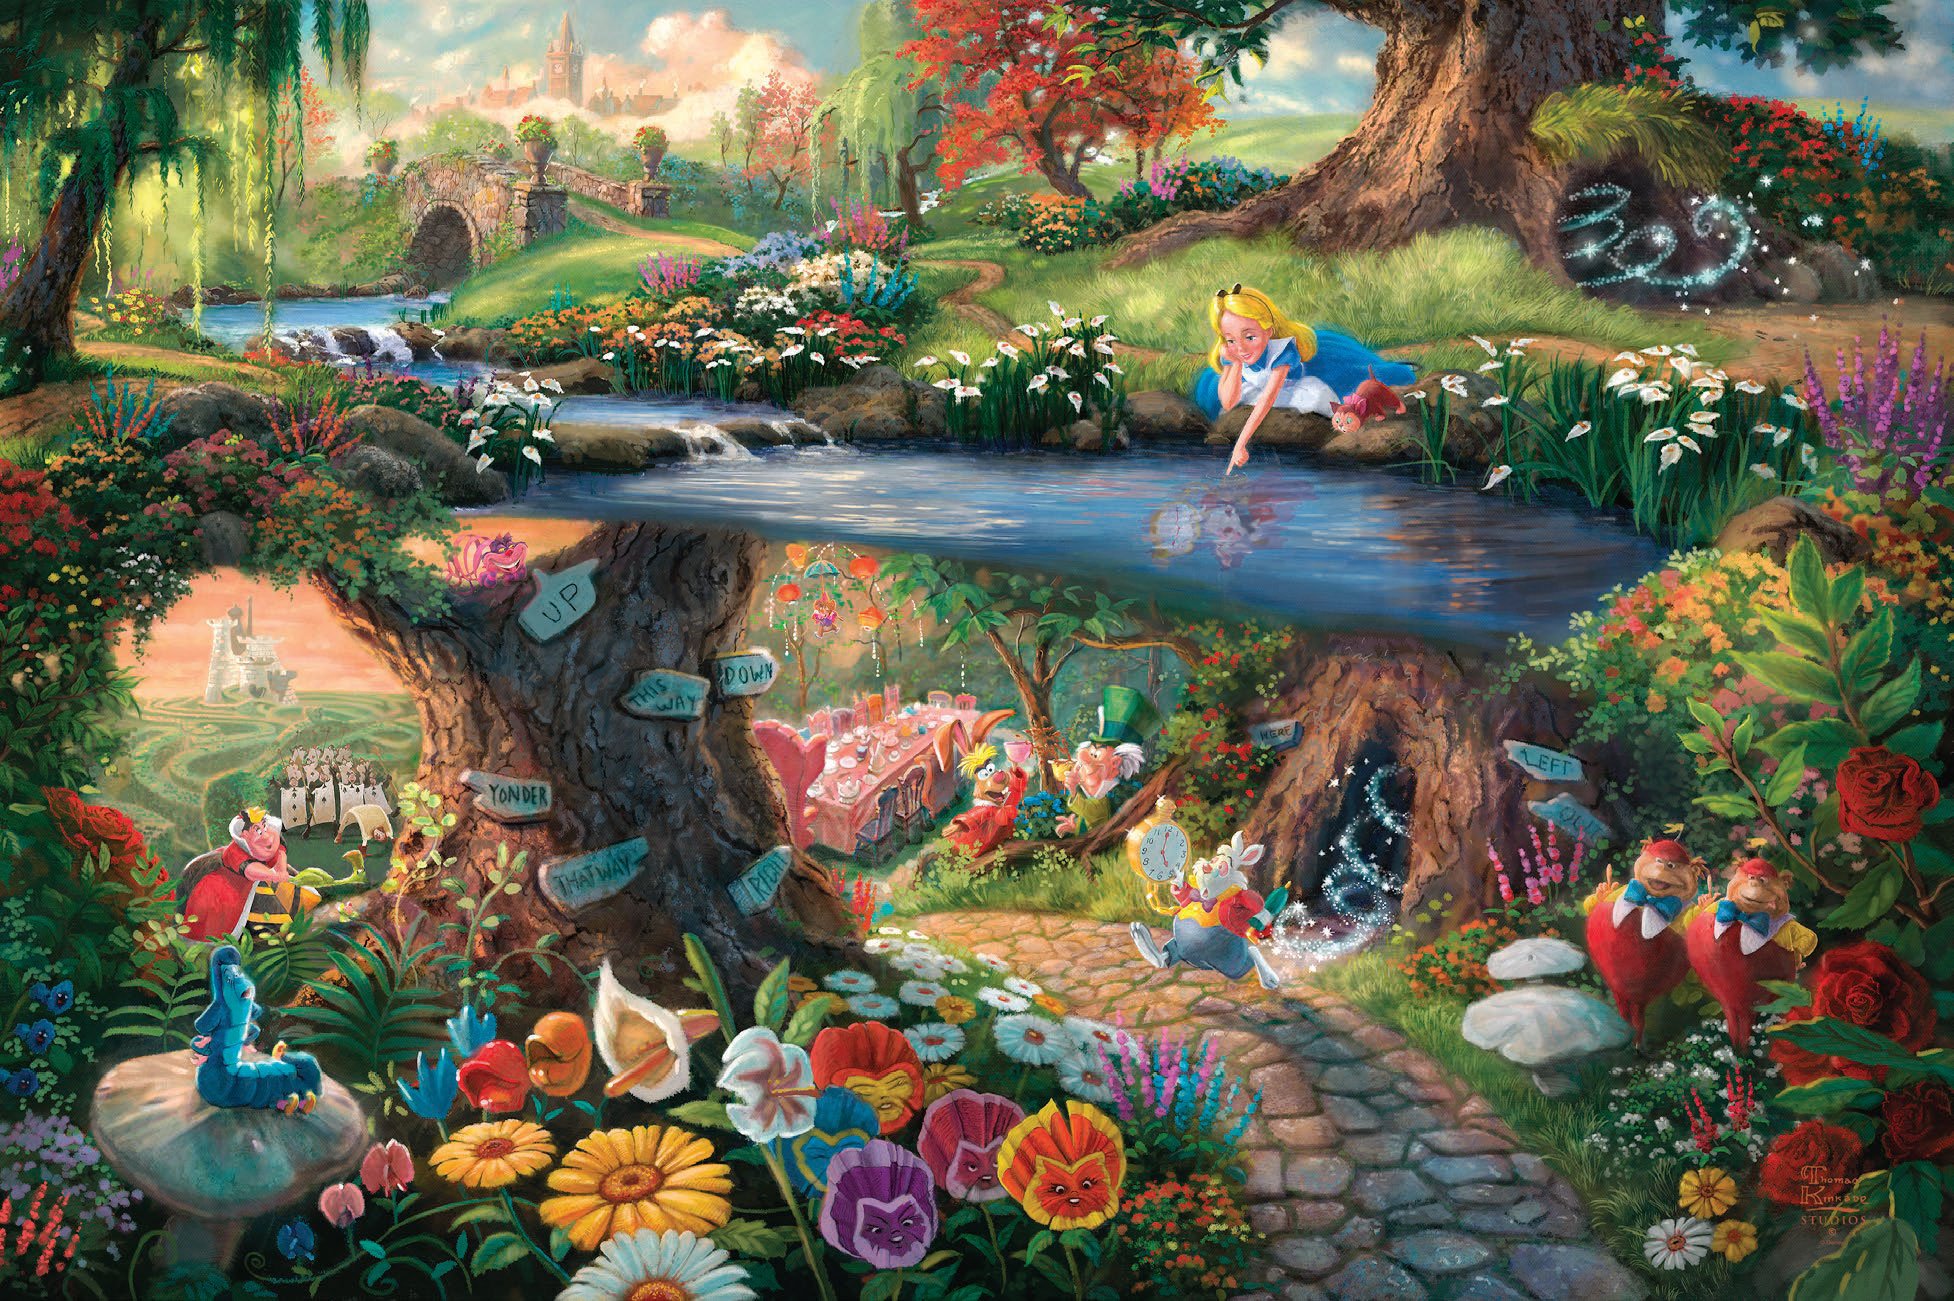 download wallpaper: Alice in Wonderland wallpaper